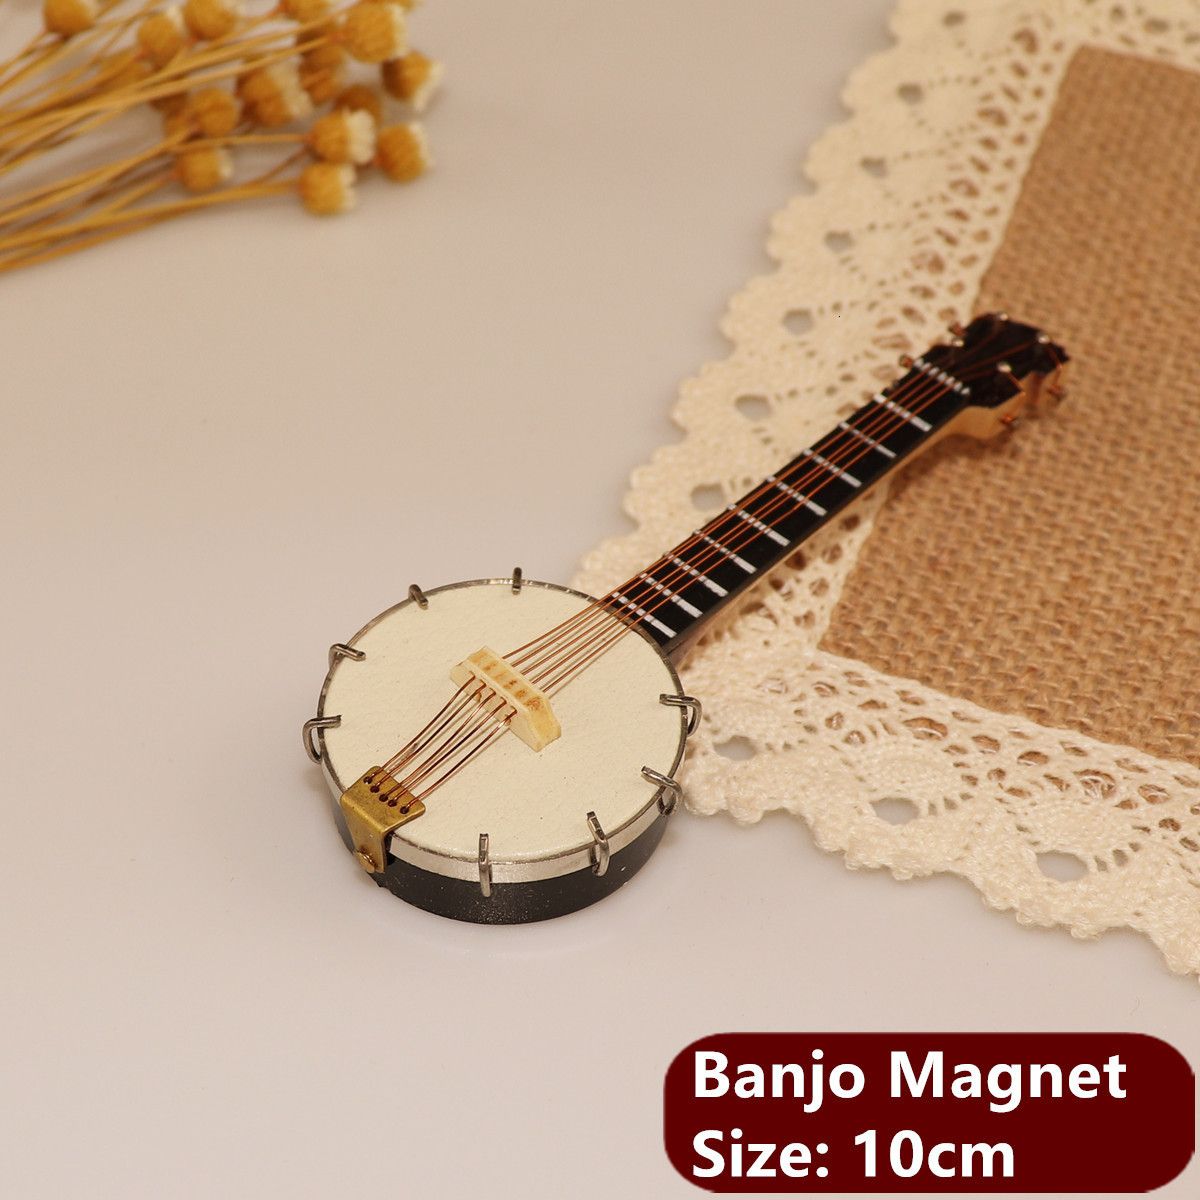 Banjo Magnet